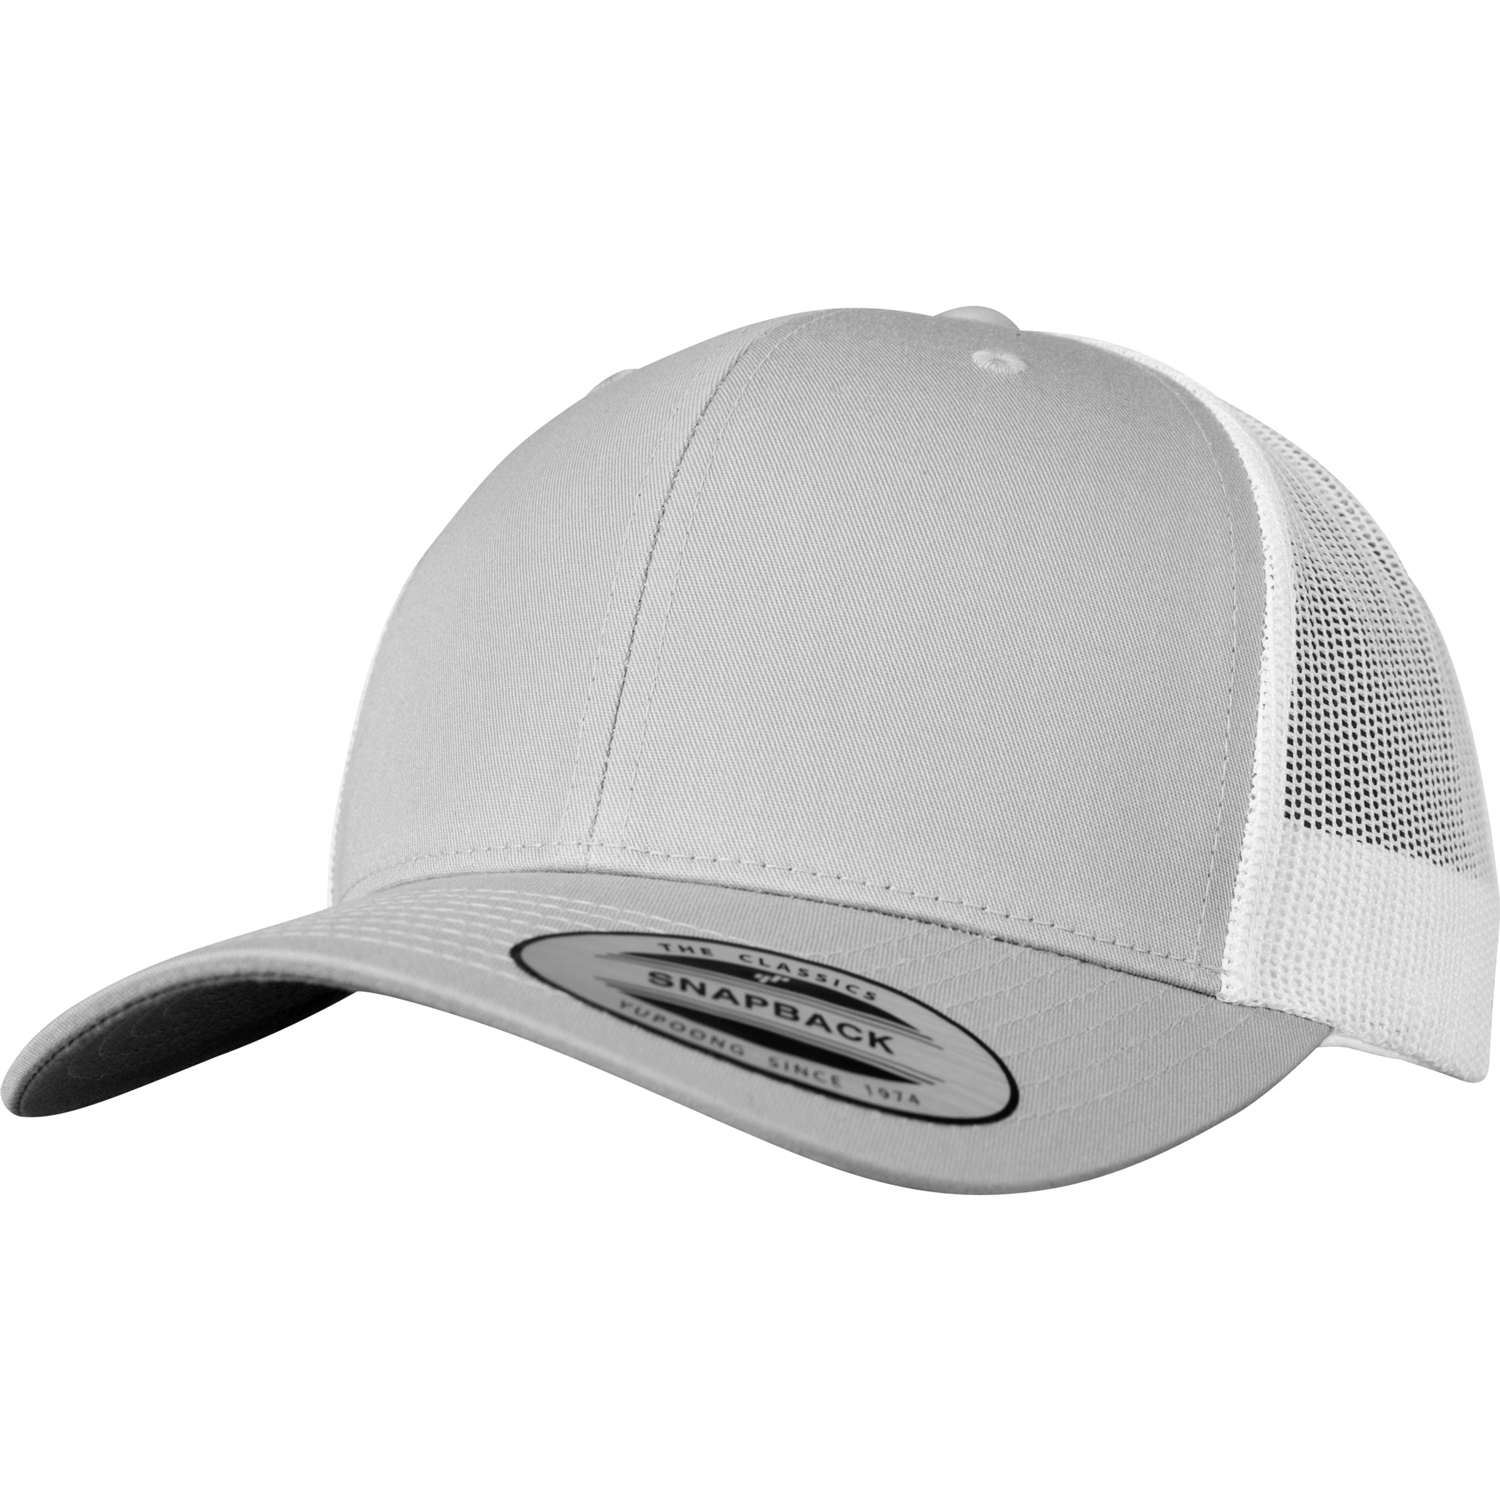 Retro Trucker 2-Tone Cap | Caps | Caps/Hats | Products | MAPROM GmbH